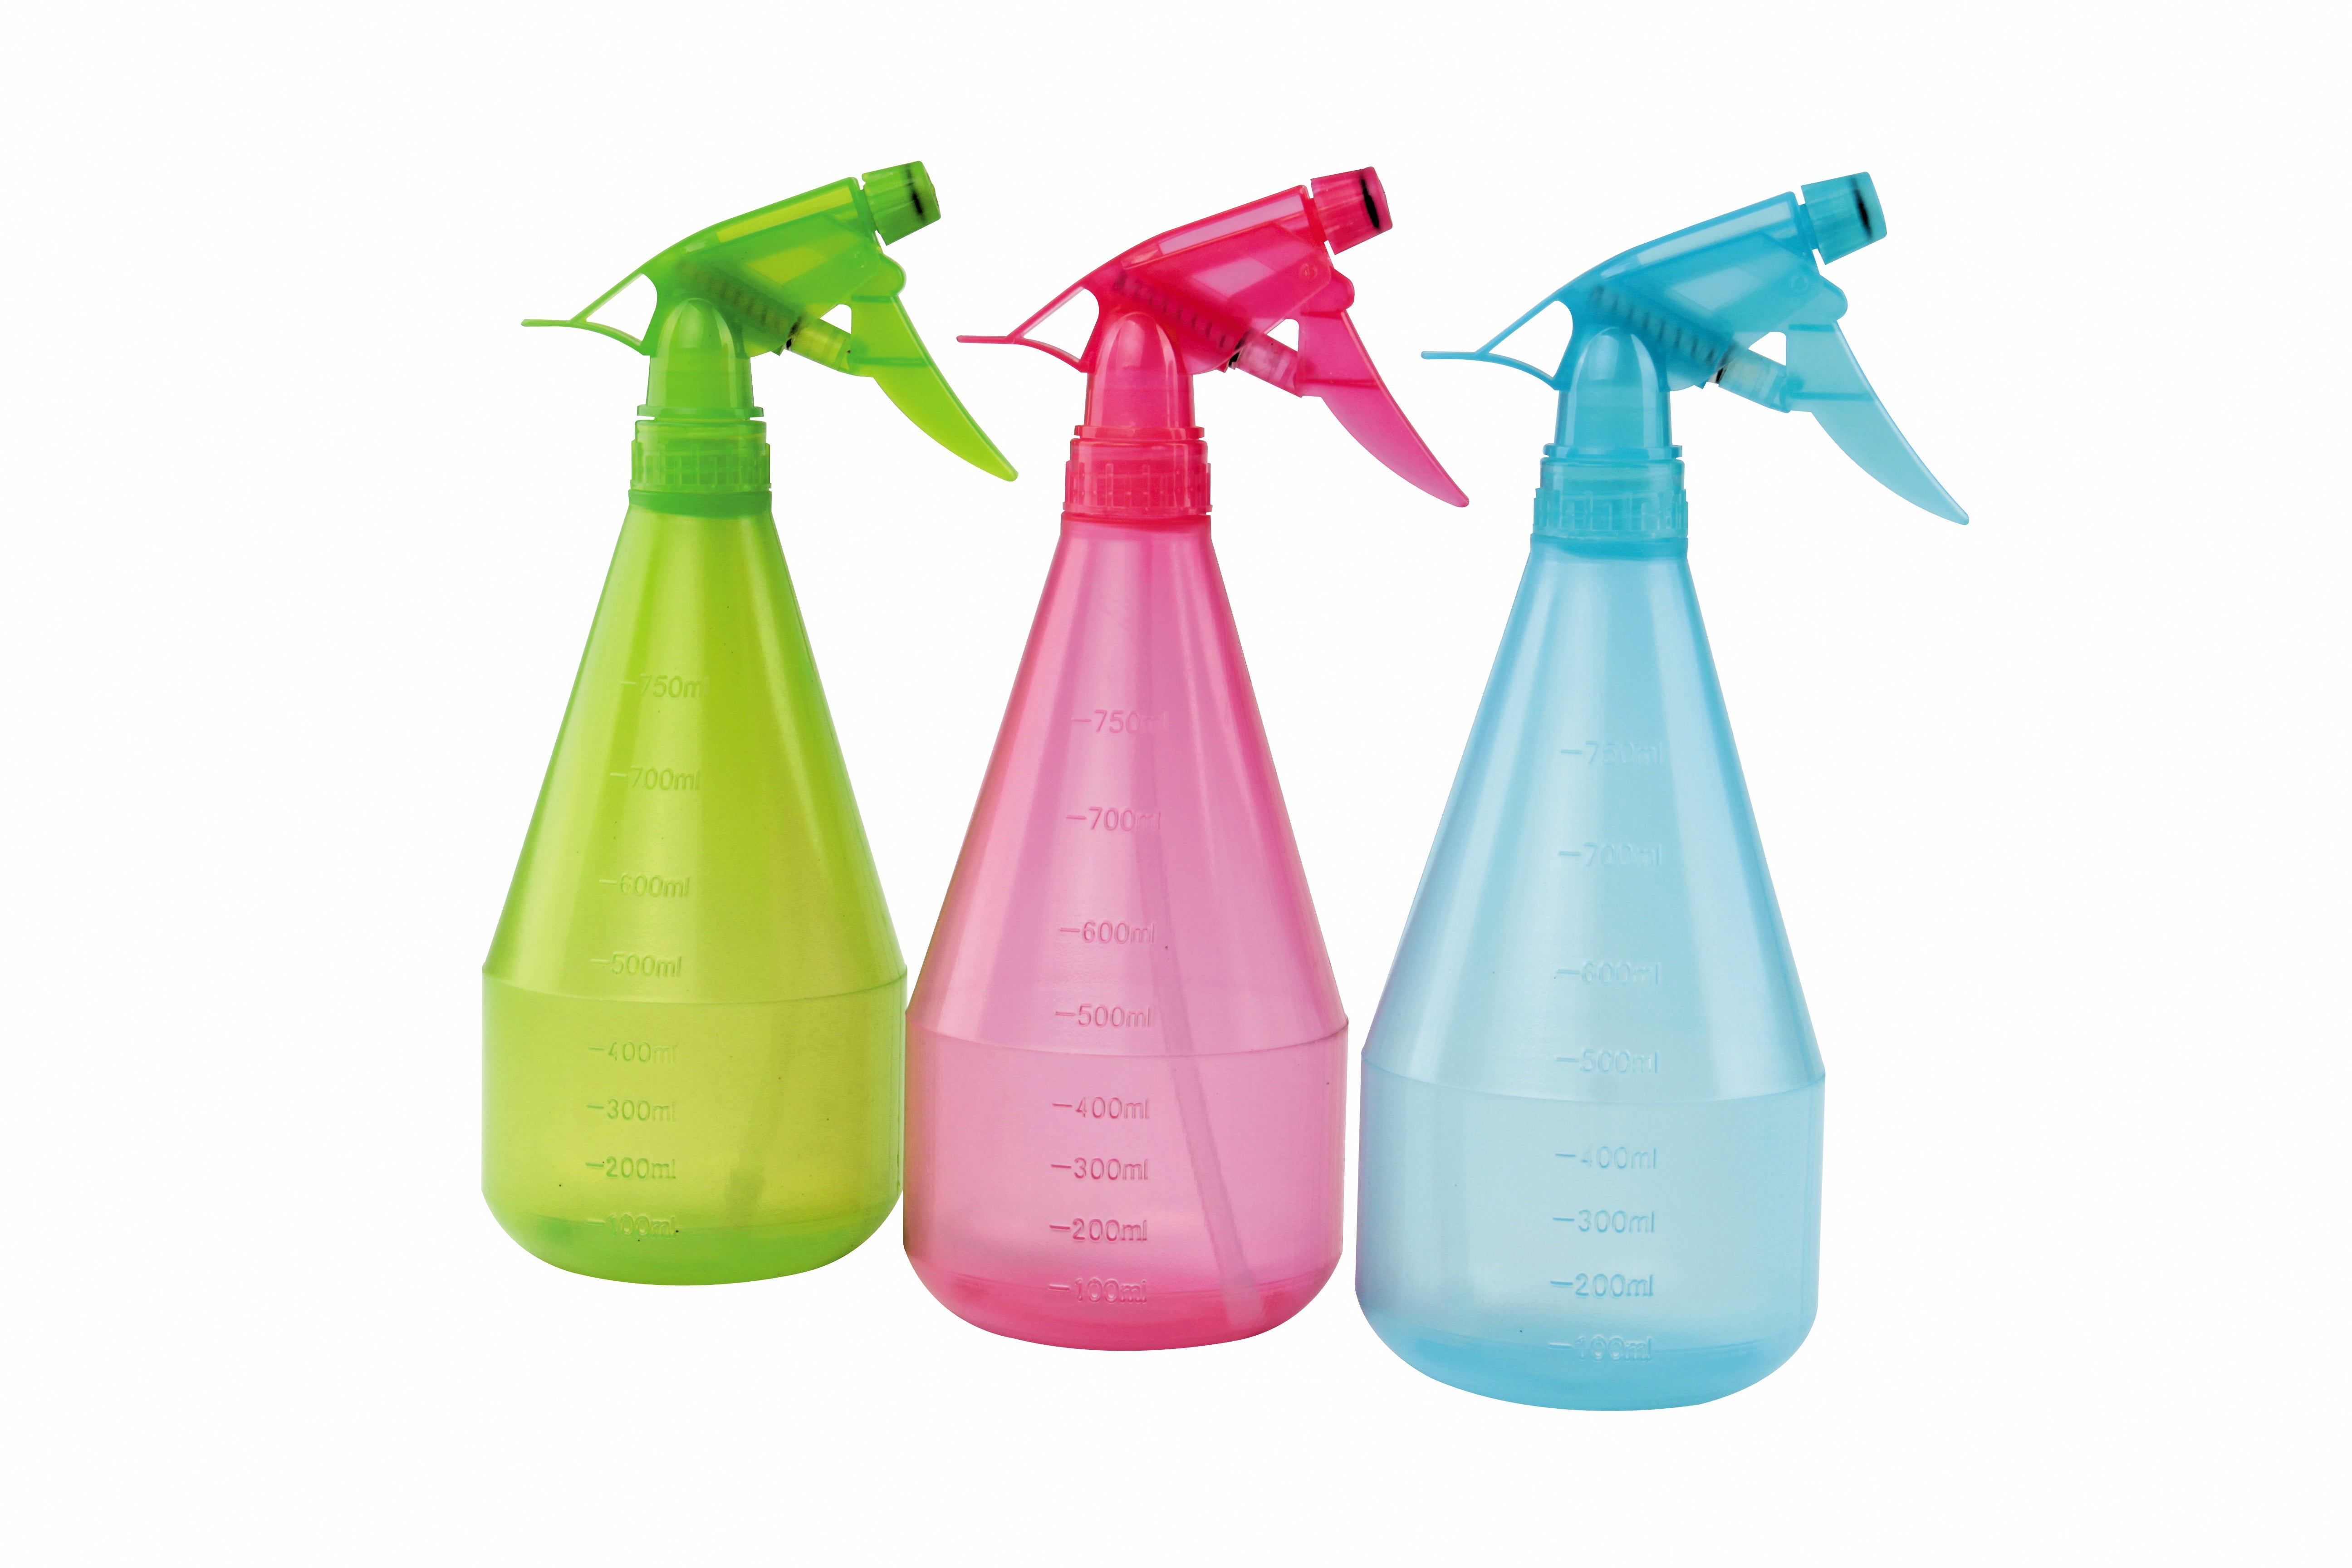 Relaxdays Spray vide, lot de 2, brume et jet, gradué, rechargeable,  plastique, pulvérisateur 1 l, vaporisateur, blanc